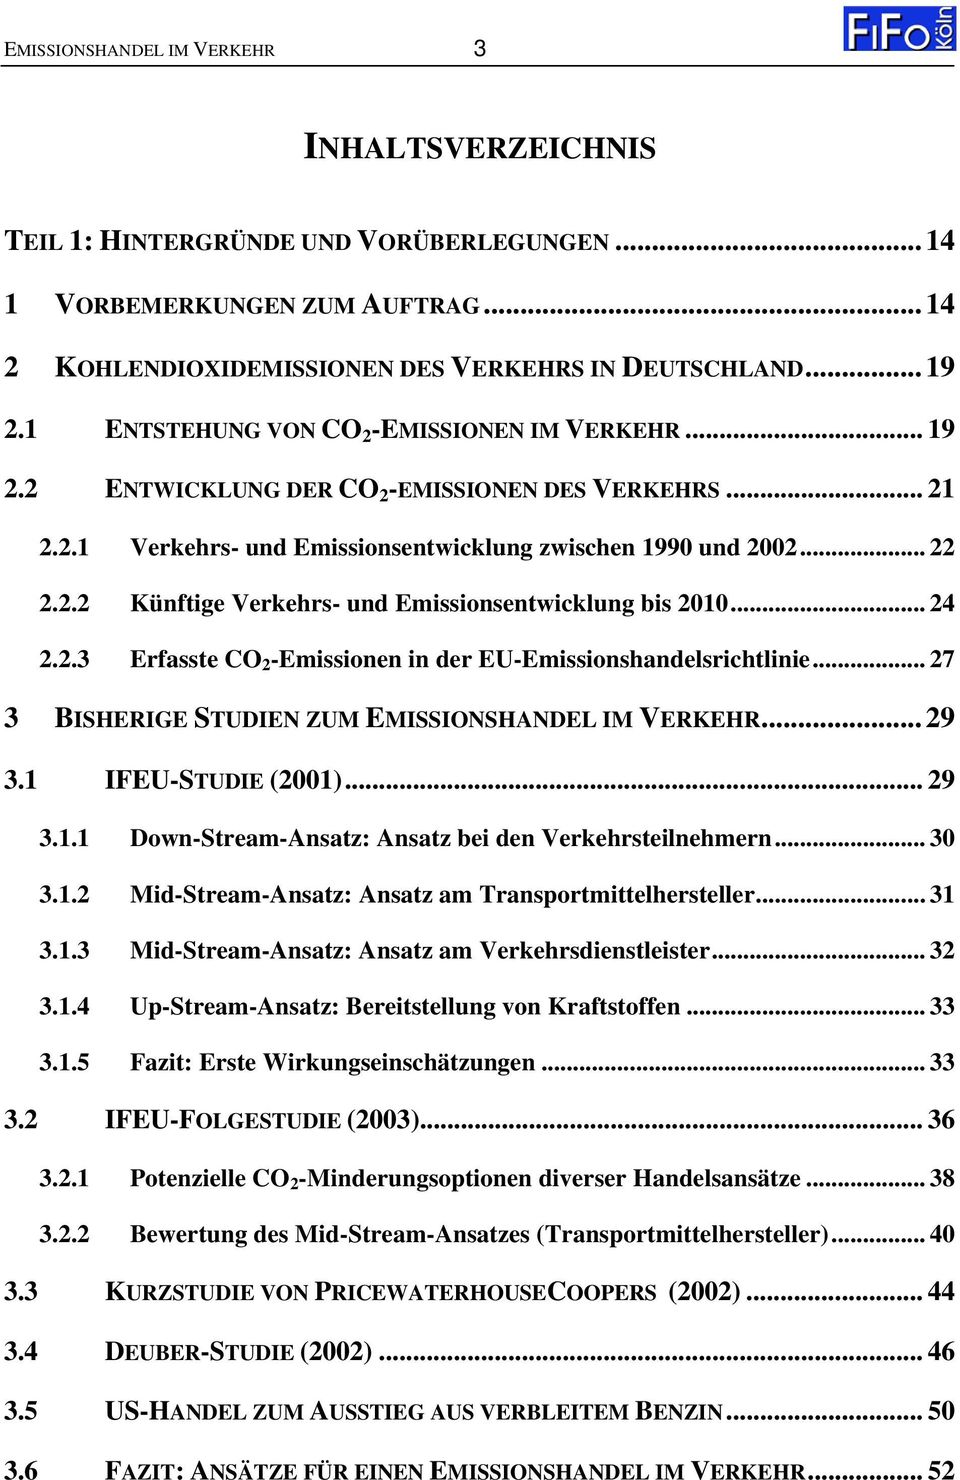 .. 24 2.2.3 Erfasste CO 2 -Emissionen in der EU-Emissionshandelsrichtlinie... 27 3 BISHERIGE STUDIEN ZUM EMISSIONSHANDEL IM VERKEHR... 29 3.1 IFEU-STUDIE (2001)... 29 3.1.1 Down-Stream-Ansatz: Ansatz bei den Verkehrsteilnehmern.